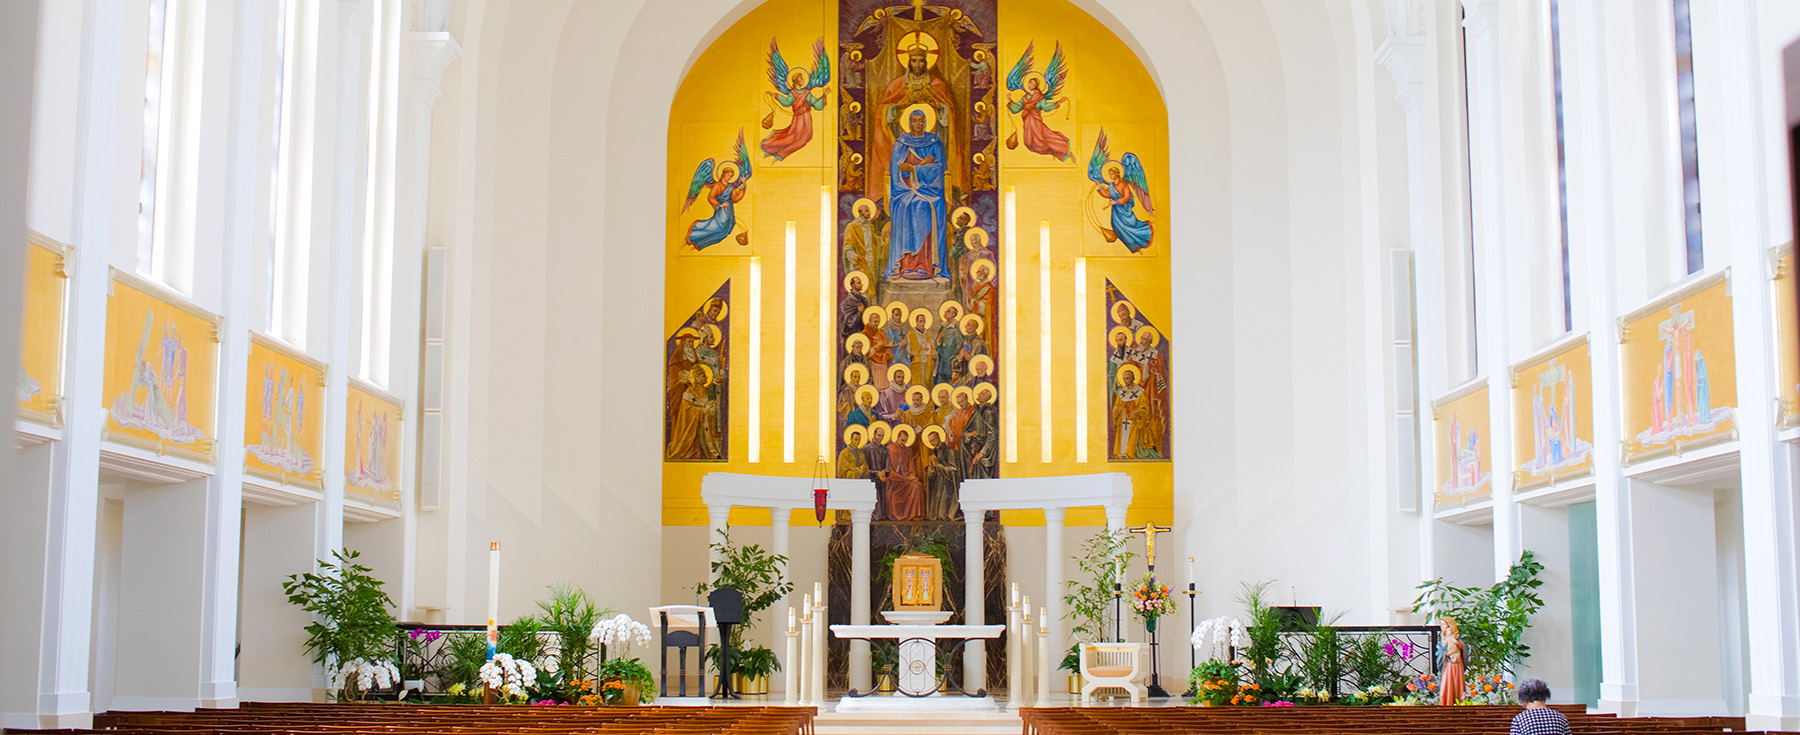 A chapel interior